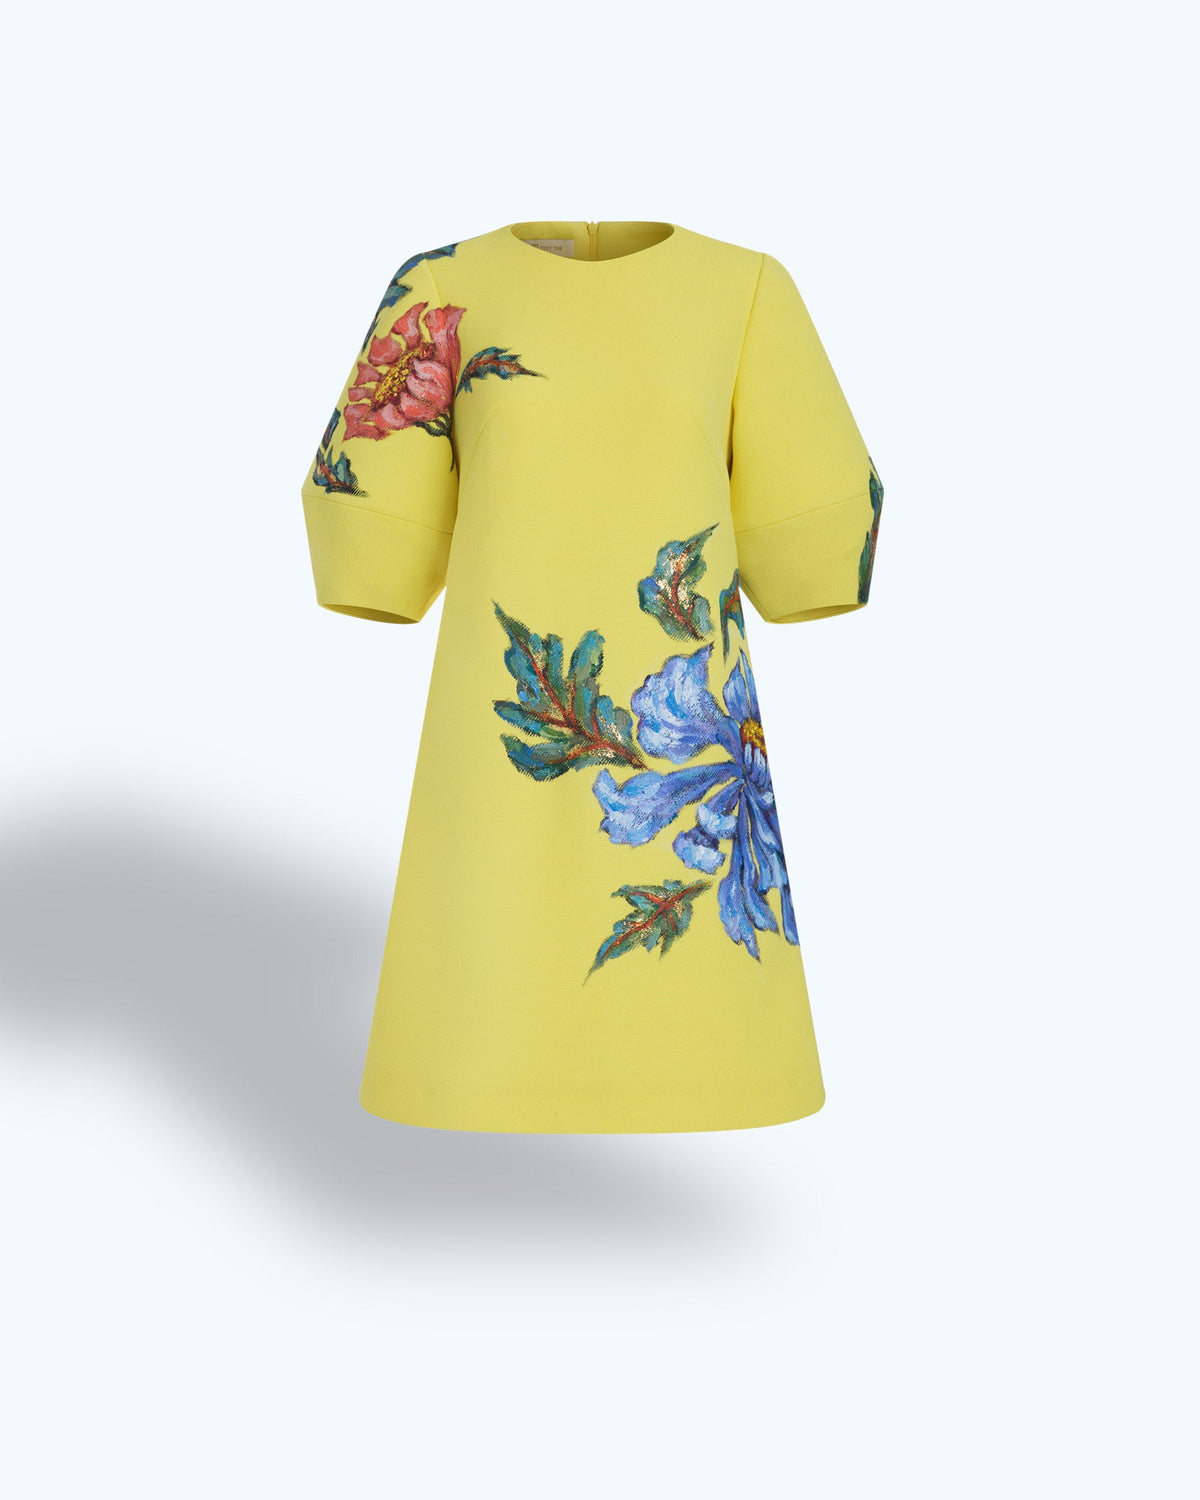 TinyInk-Resort19-yellow-hand-painted-poppy-voluminous-sleeve-mini-dress 